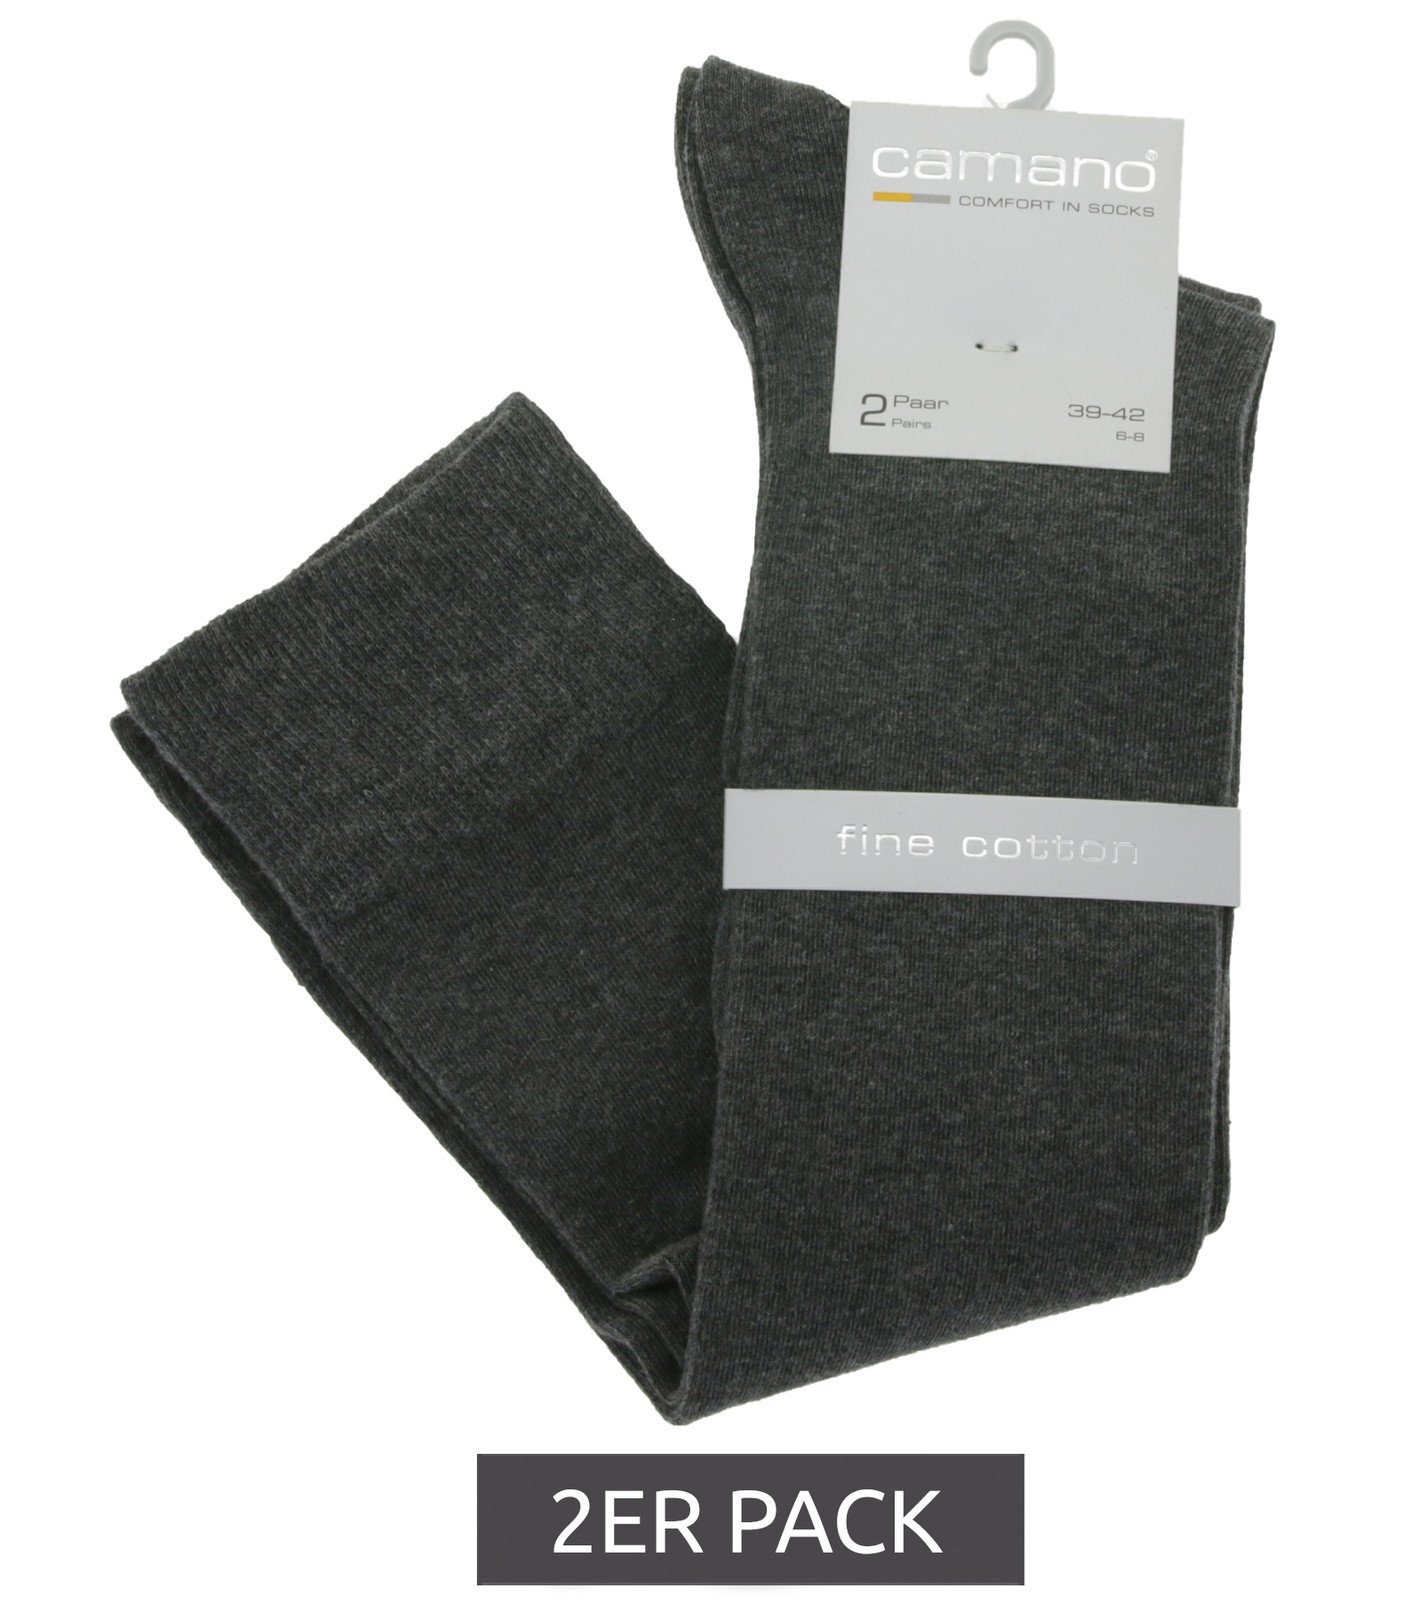 Camano Basicsocken 2er Pack camano Knie-Strümpfe Alltags-Socken Mode Baumwolle 4601 Anthrazit aus